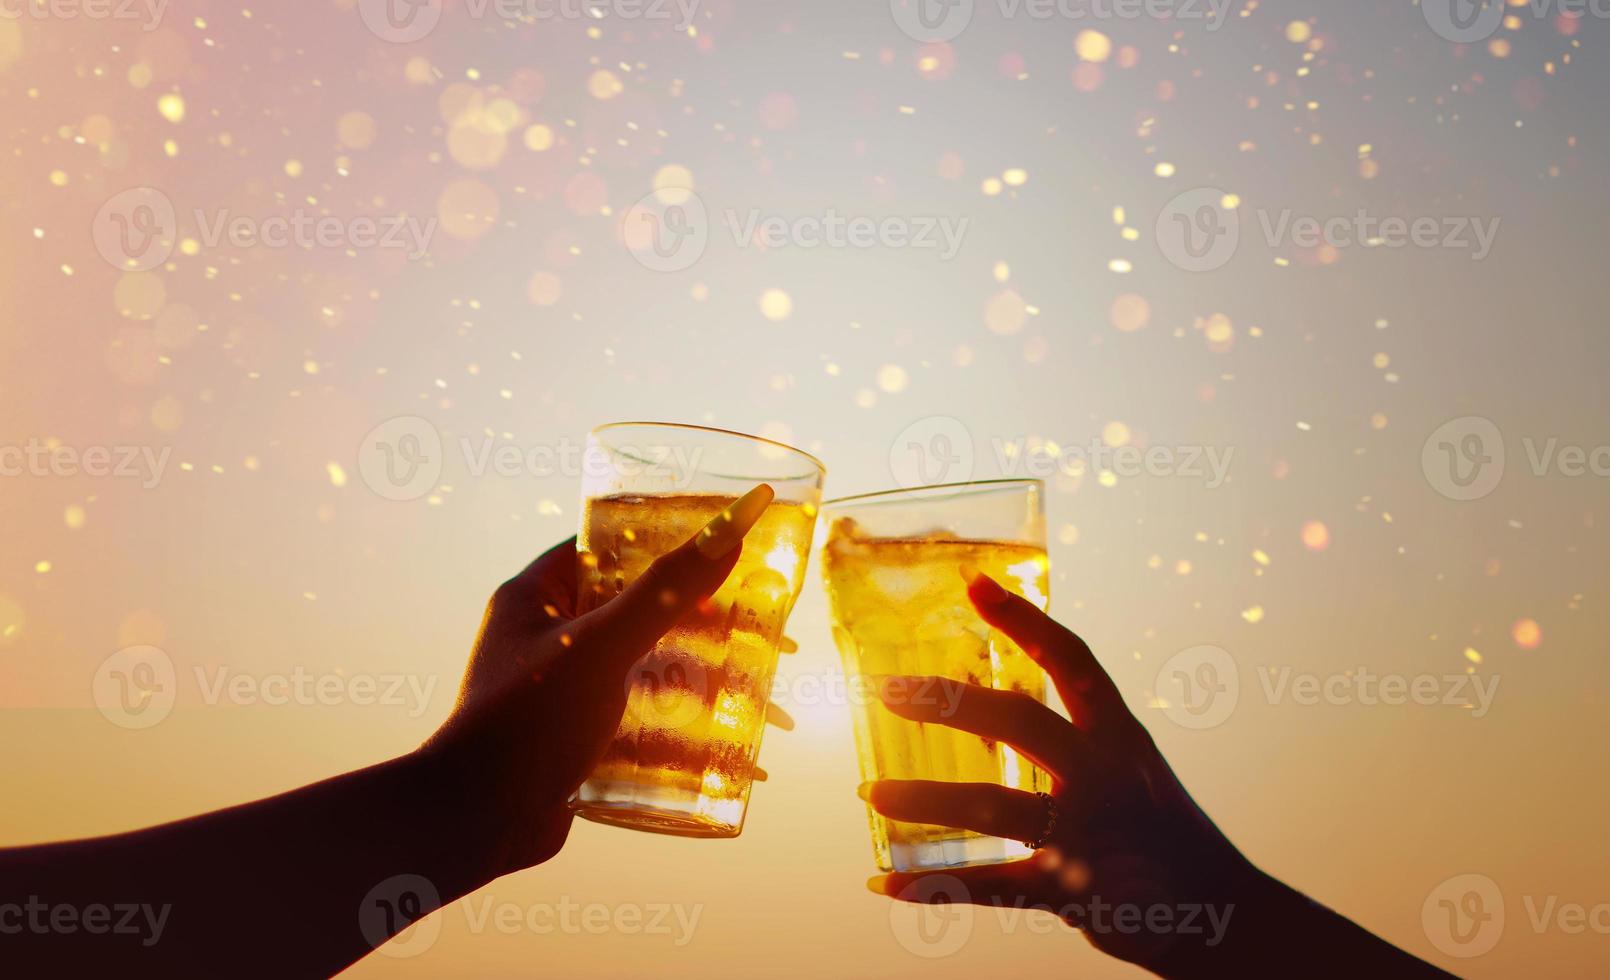 Bierglas feiert sanft gefärbte Biergetränke, Freundschaften, Zusammenkünfte, am Meer, entspannte Tage und Essen und Trinken. feieridee mit kopierraum foto